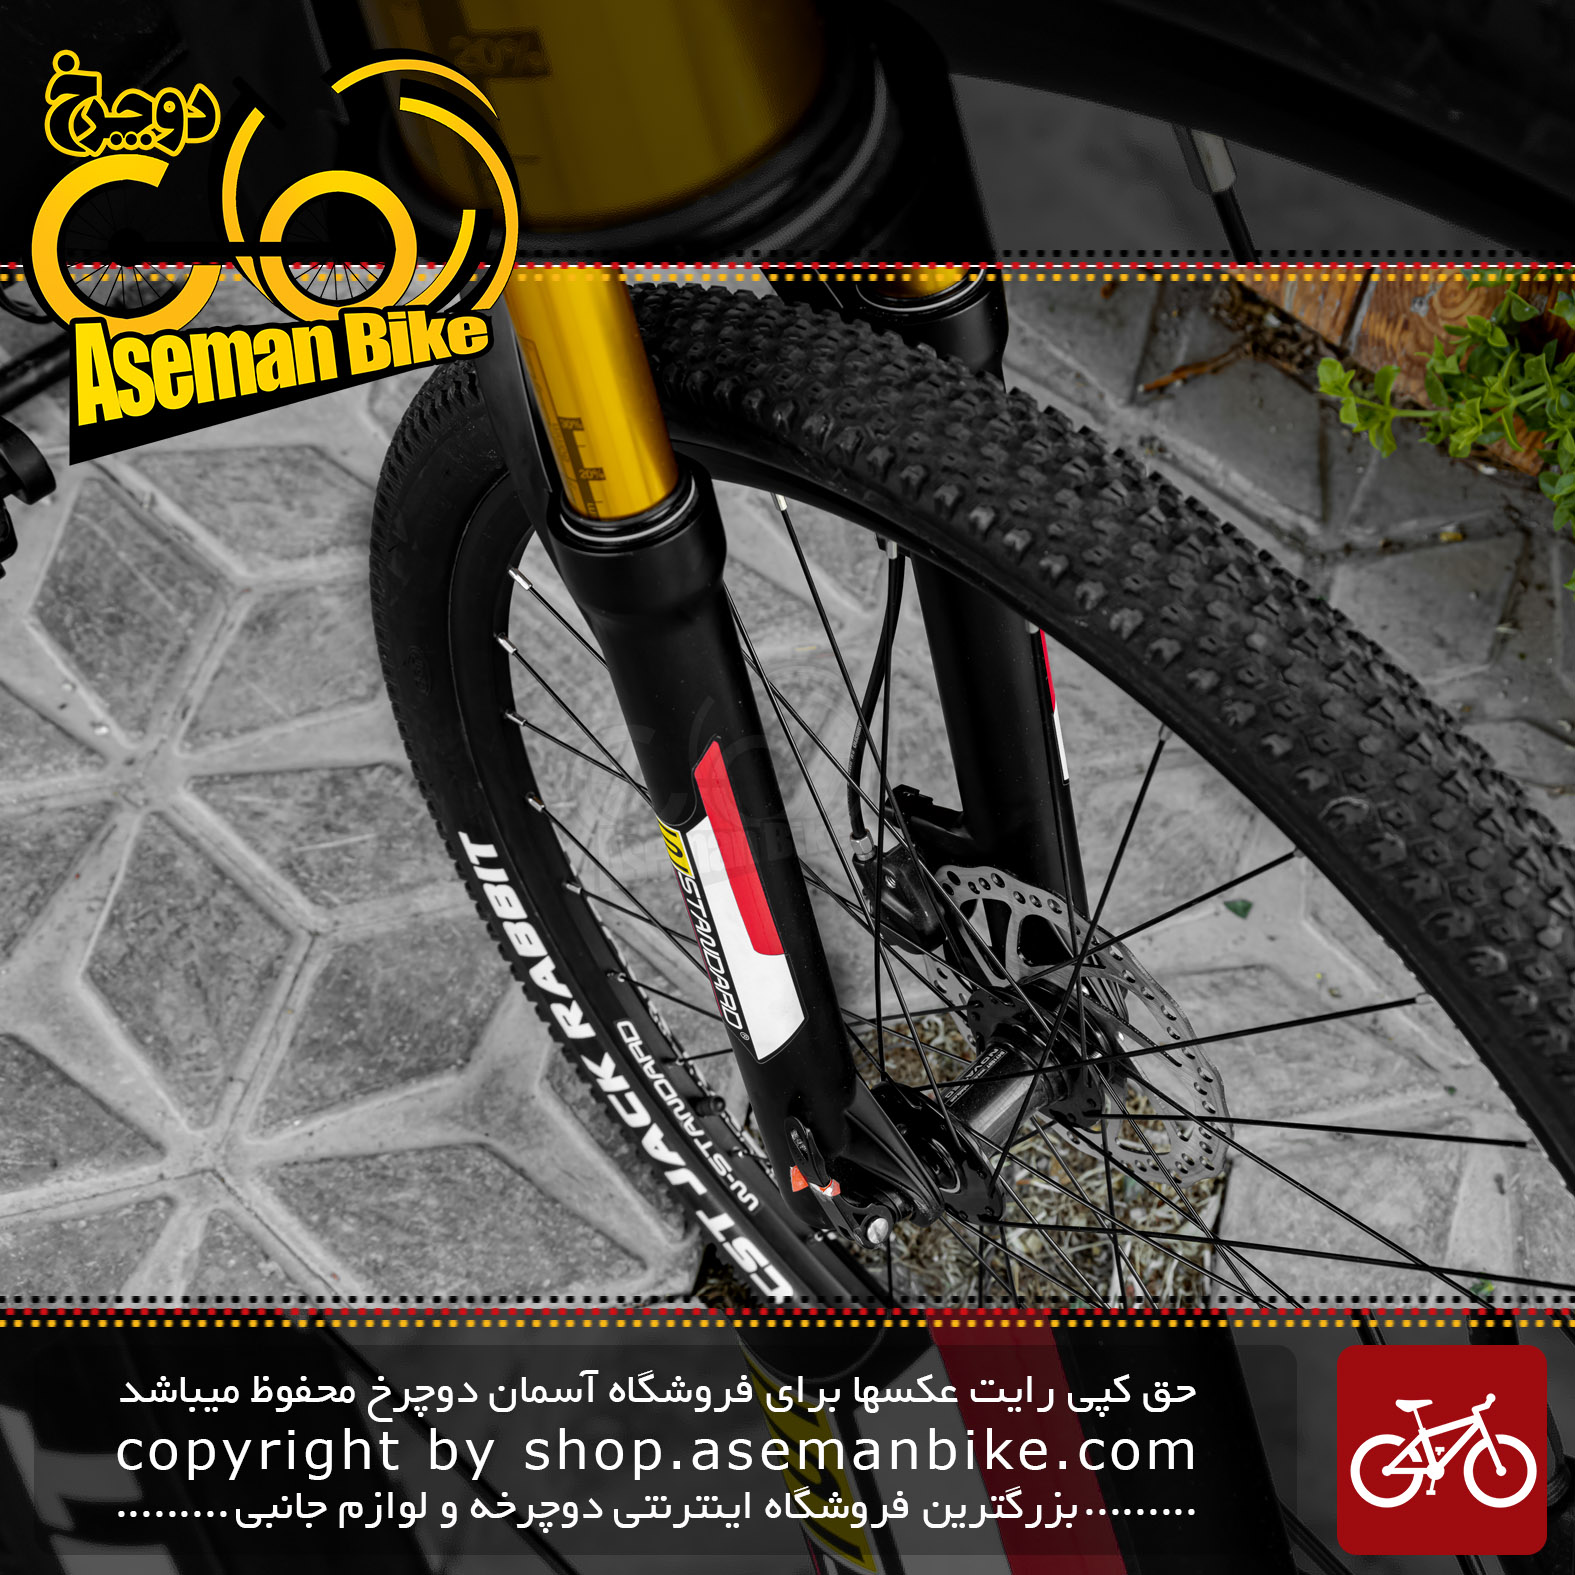 دوچرخه کوهستان دبلیو استاندارد مدل پرو تی وان سایز 27.5 رنگ مشکی/قرمز 27 سرعته 2021 W Standard MTB Bicycle Pro T1 27.5 Black/Red 27 Speed 2021